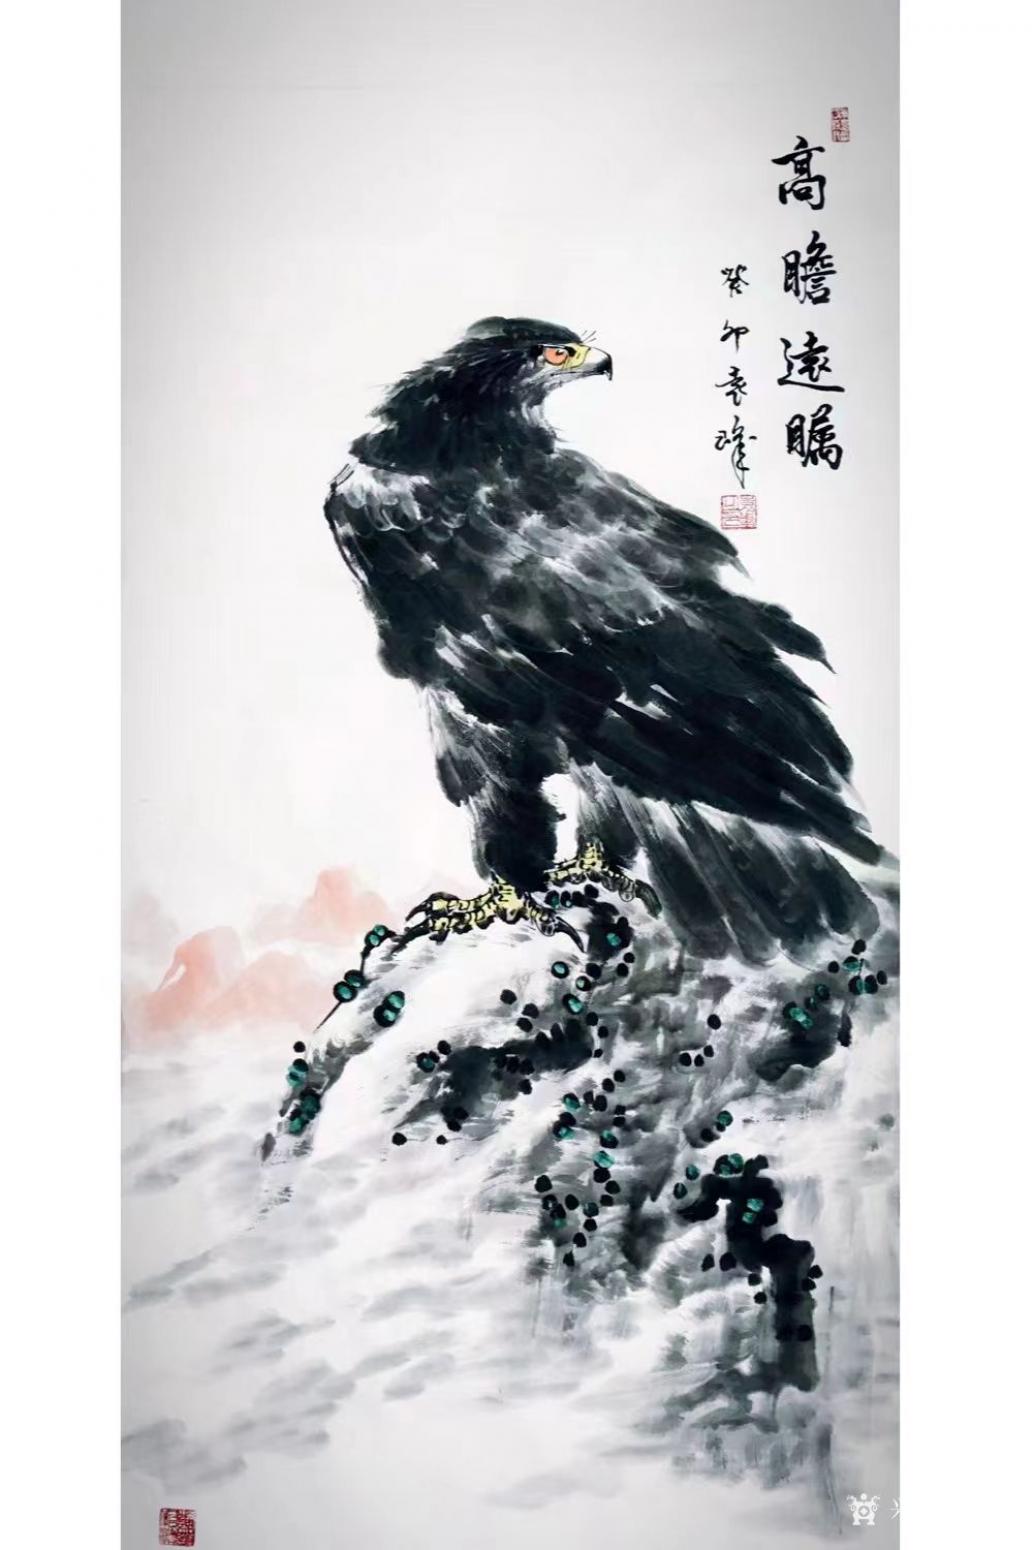 袁峰国画作品《鹰-高瞻远瞩》